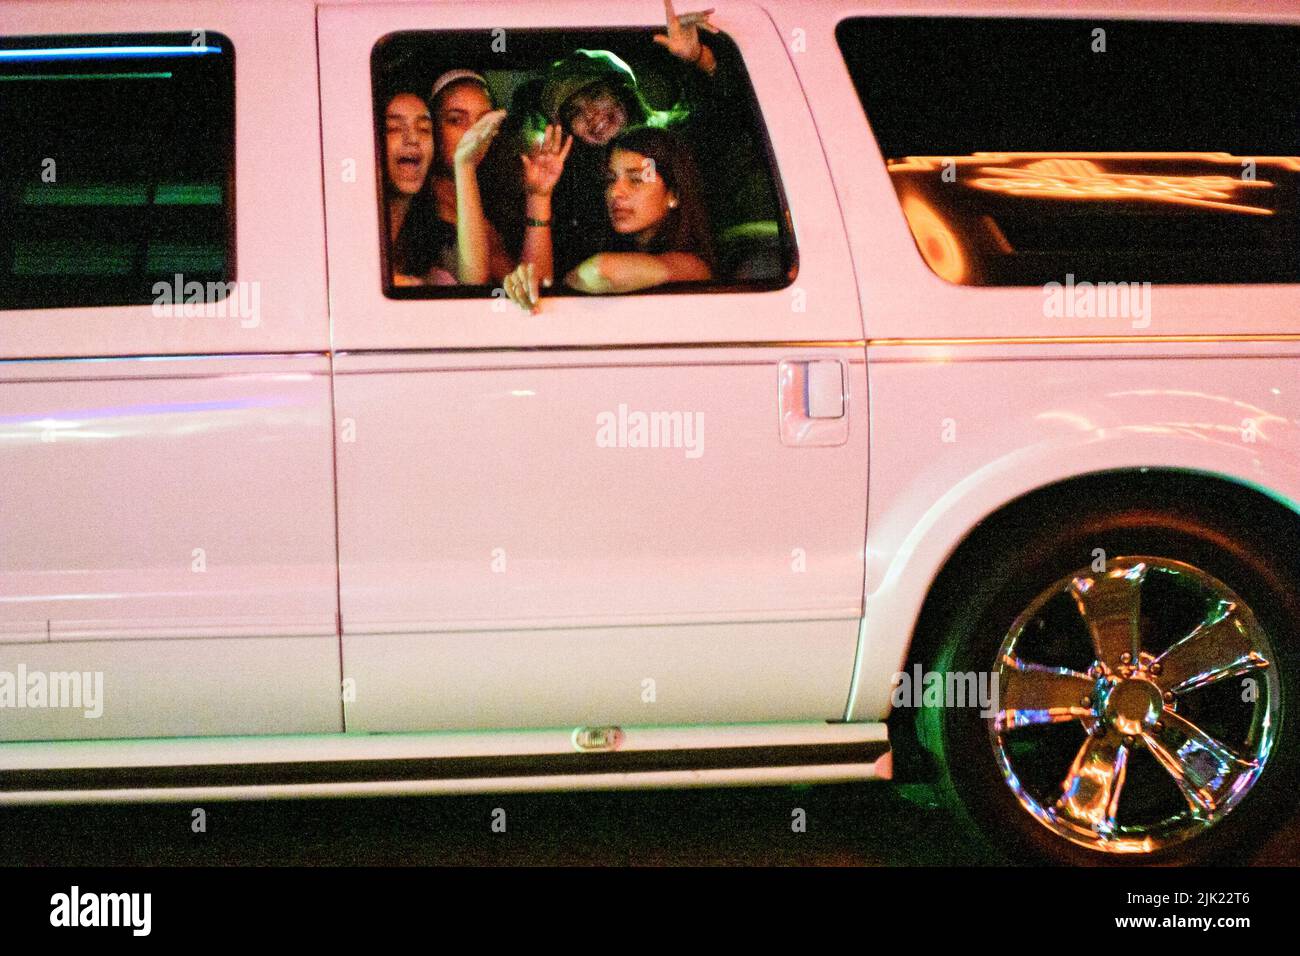 Miami Beach Florida, South Beach Ocean Drive, nuit nocturne, circulation croisière voiture fenêtre adolescents adolescents adolescents adolescent filles Banque D'Images